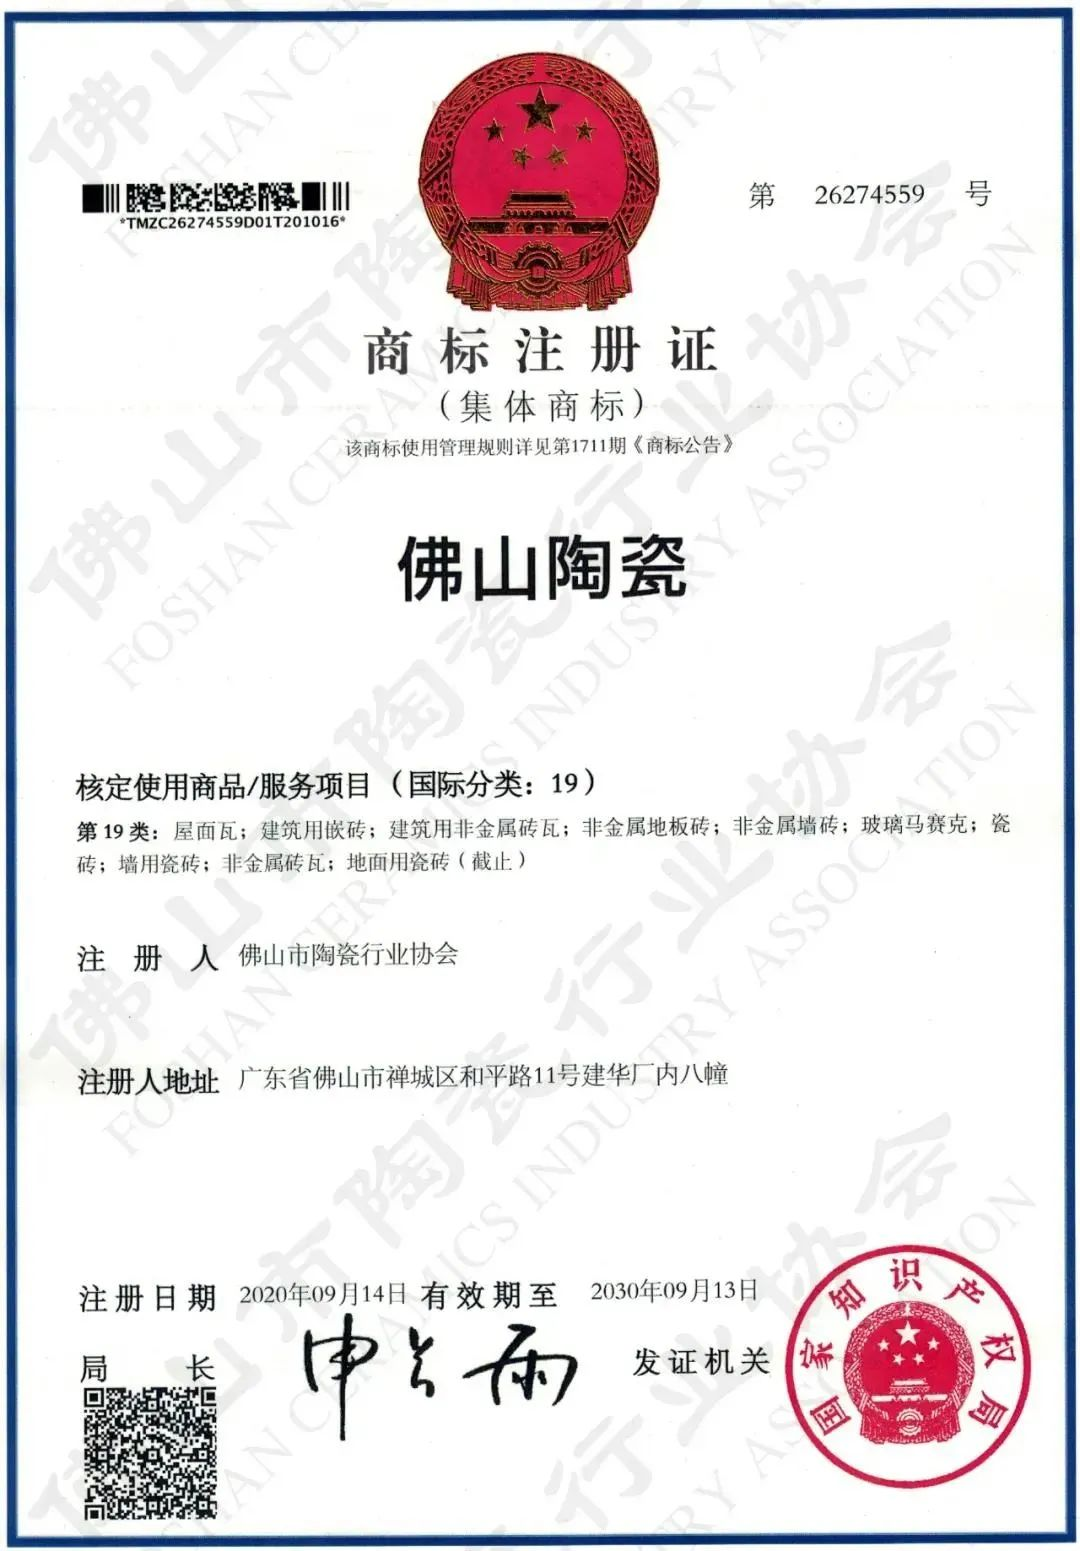 权威认证，品质保障 | 大米乐m6
米乐m6
上榜首批“佛山陶瓷”集体商标授权品牌(图4)